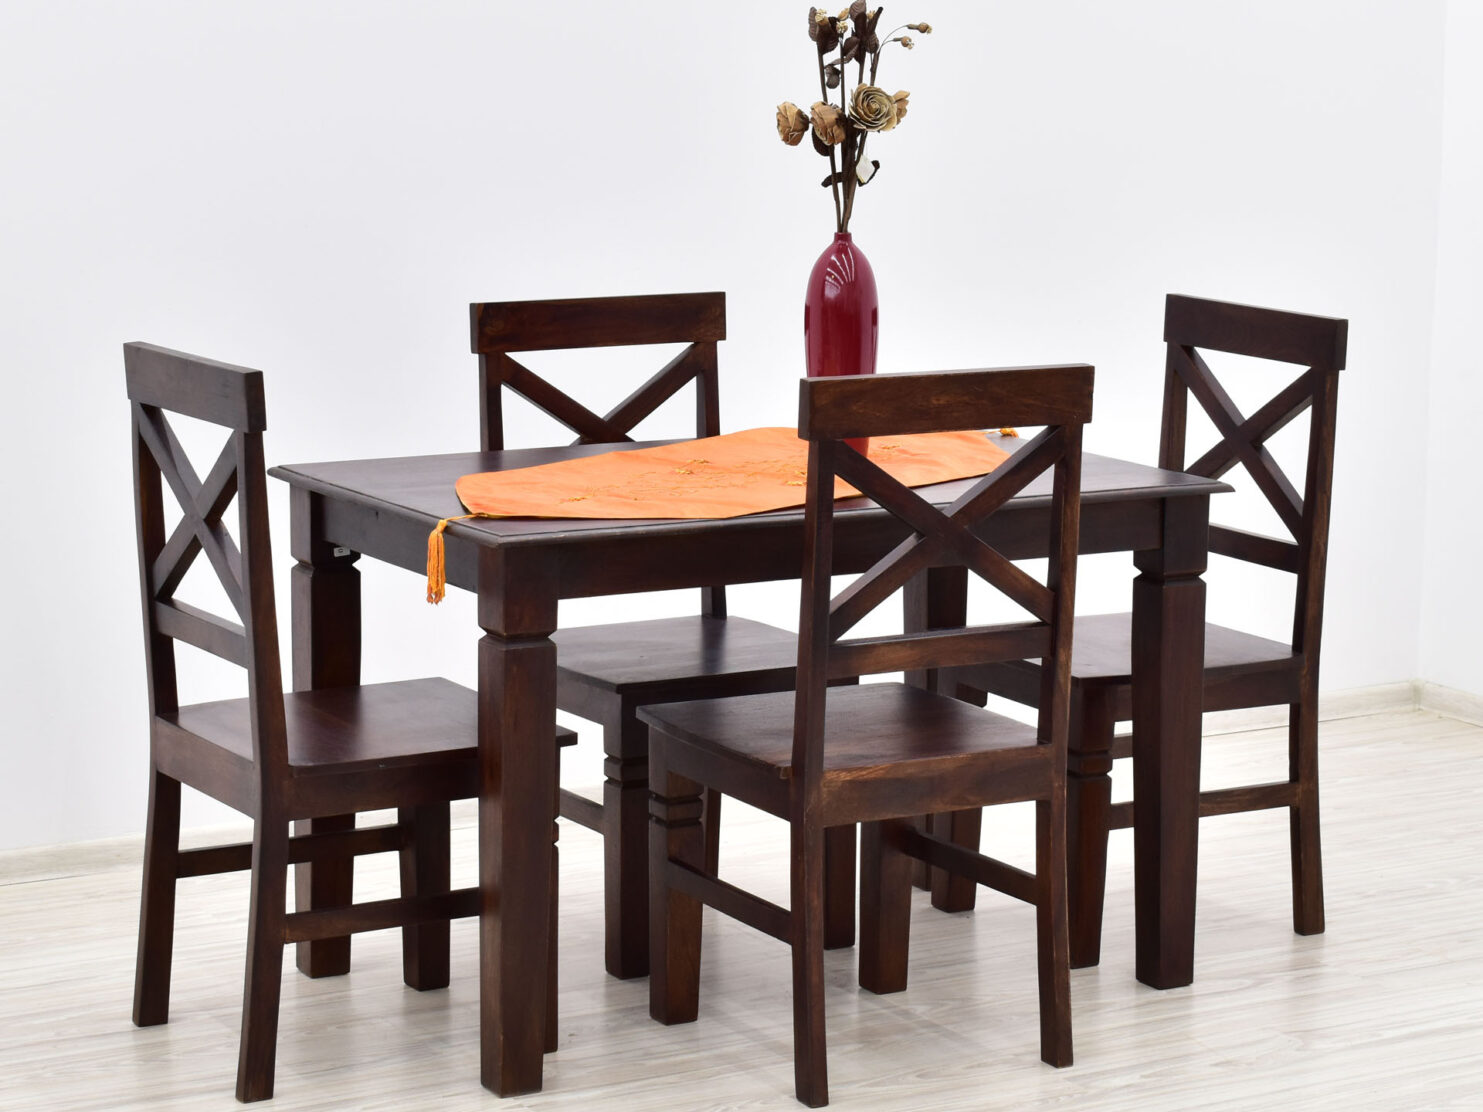 komplet-obiadowy-kolonialny-stol-4-krzesla-lite-drewno-palisander-indyjski